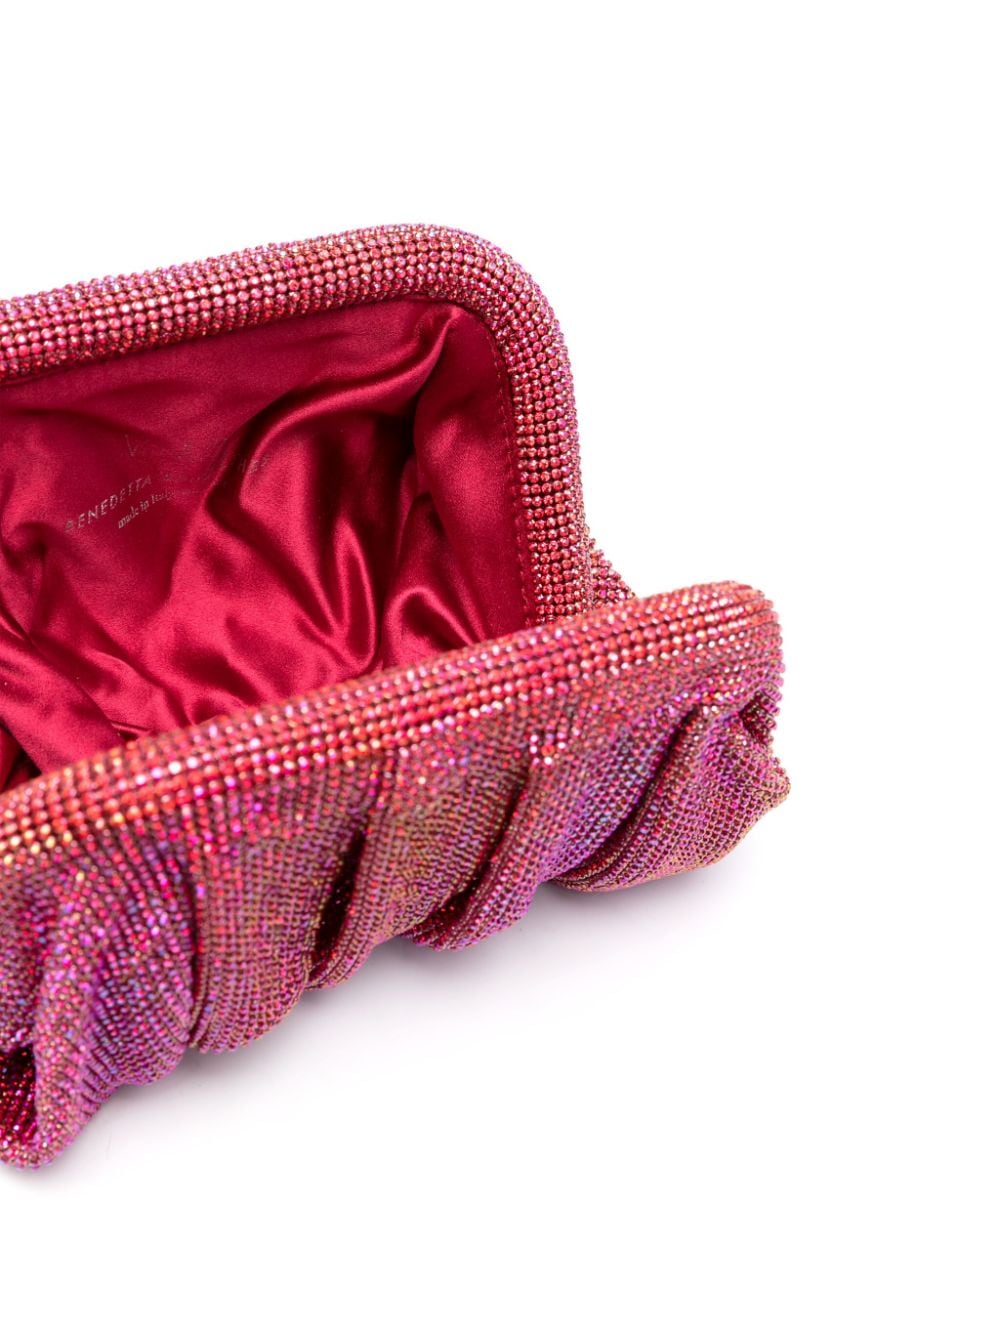 Shop Benedetta Bruzziches Venus La Petite Rhinestone-embellished Clutch Bag In Red